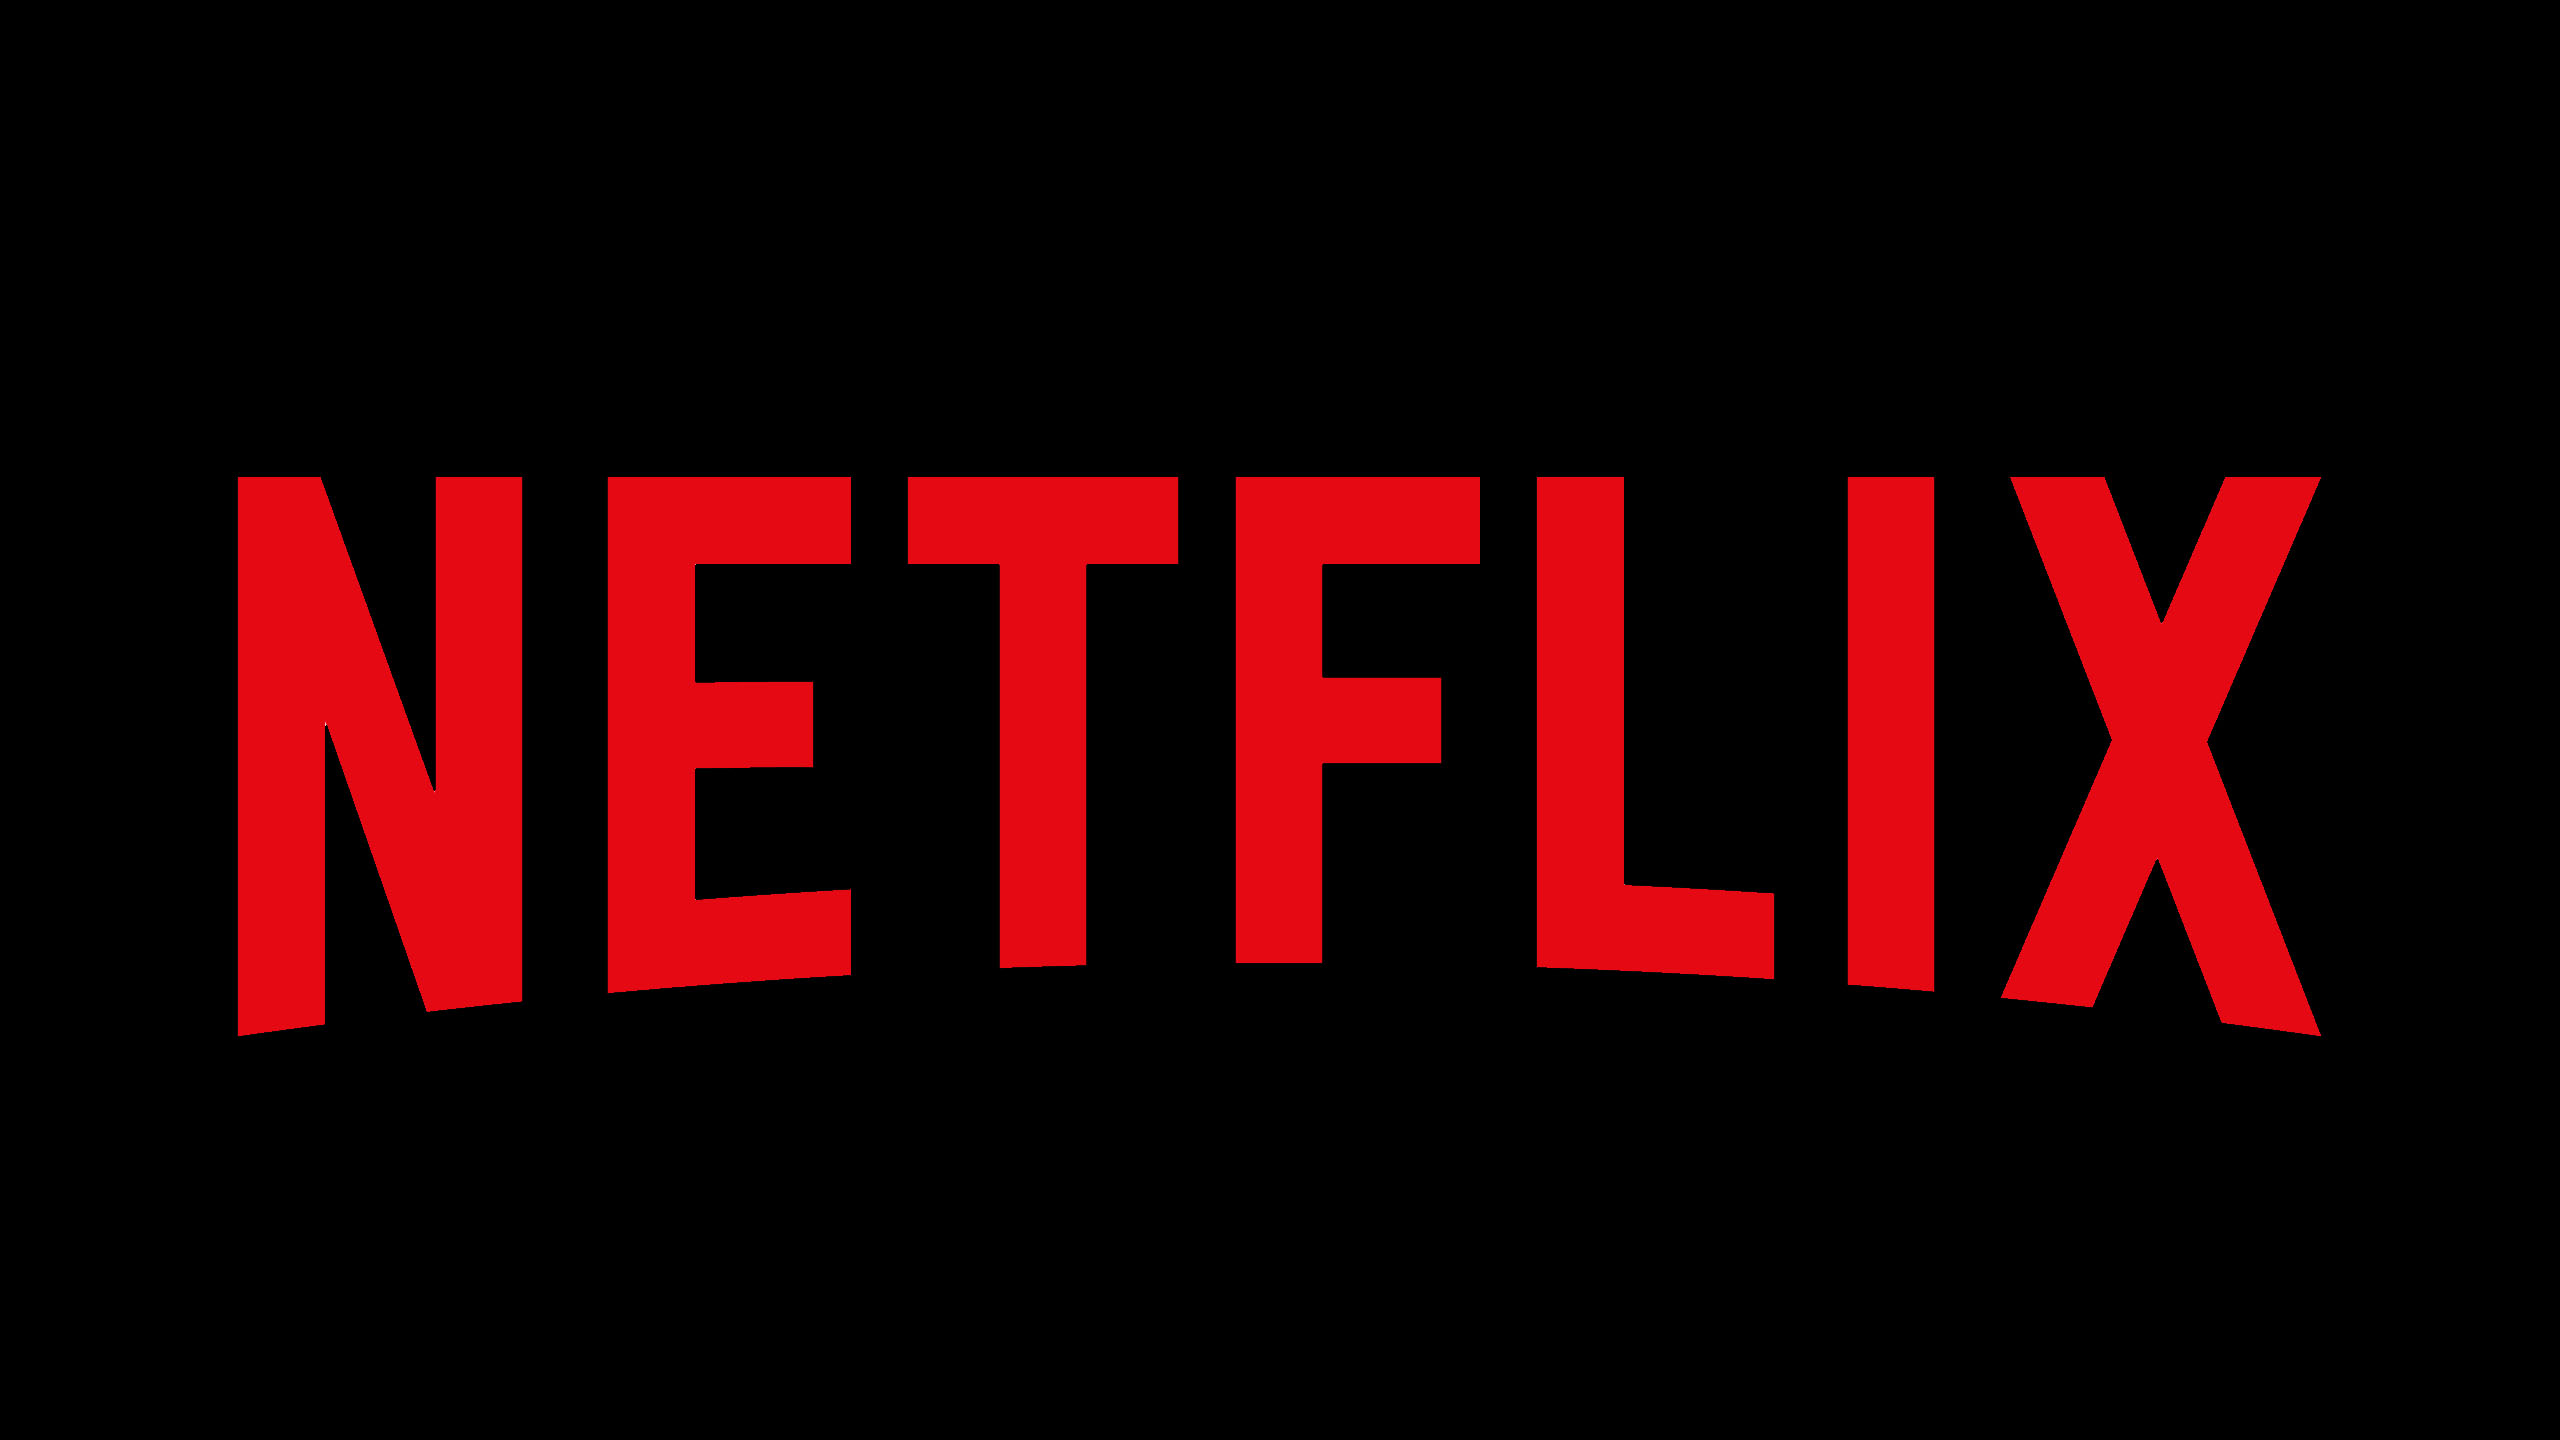 Red Netflix Word Black Wallpaper 2K Netflix